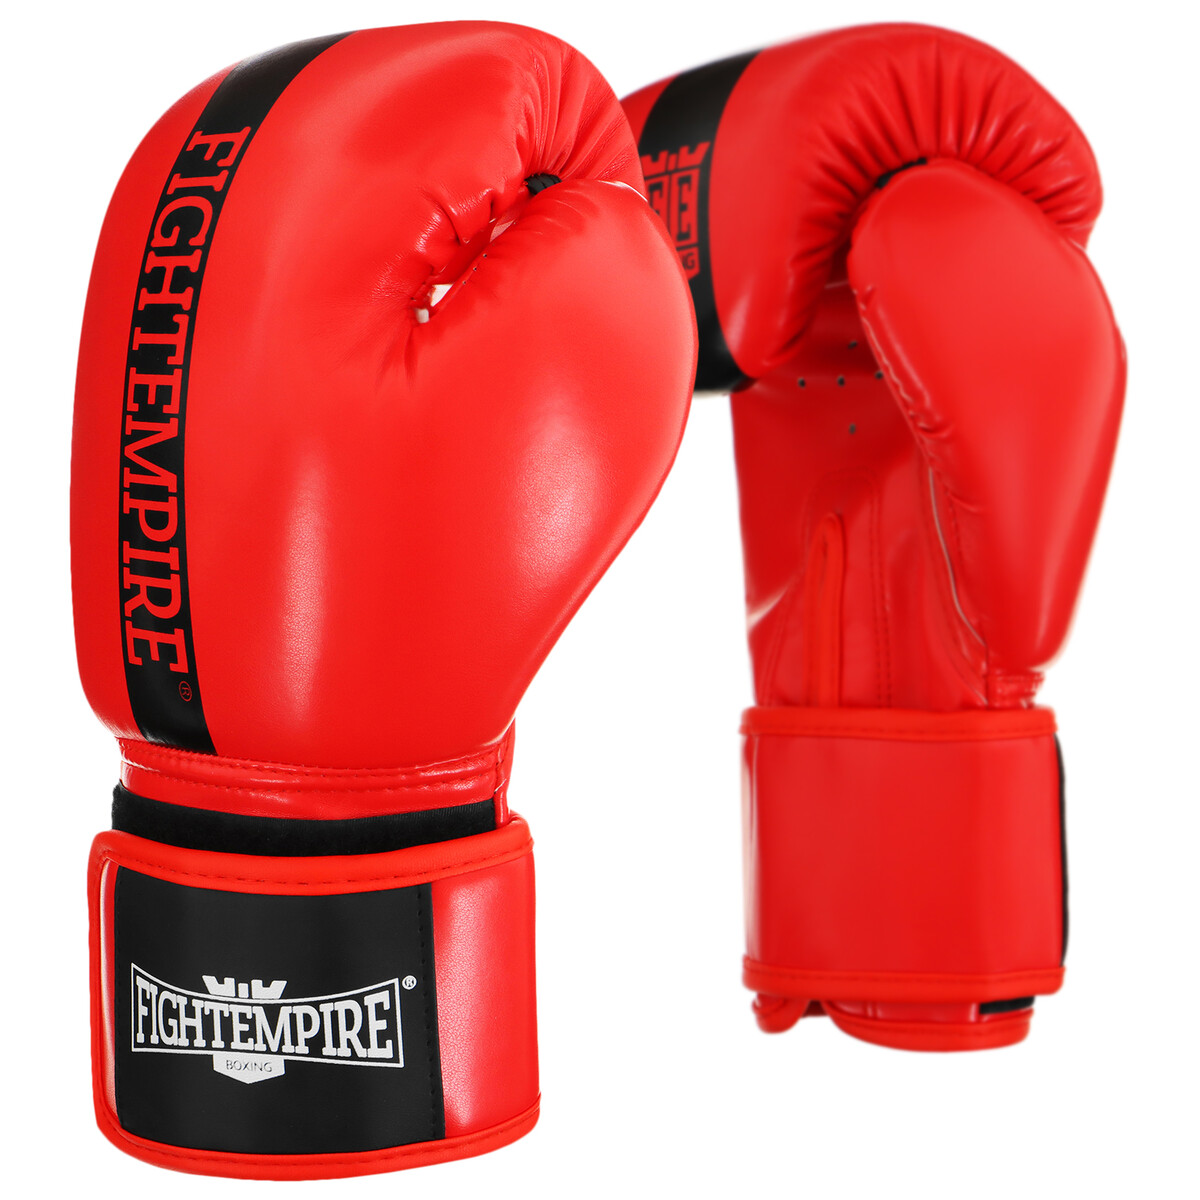 Перчатки боксерские fight empire, 10 унций, цвет красный боксерские перчатки kougar ko200 4 4oz красный